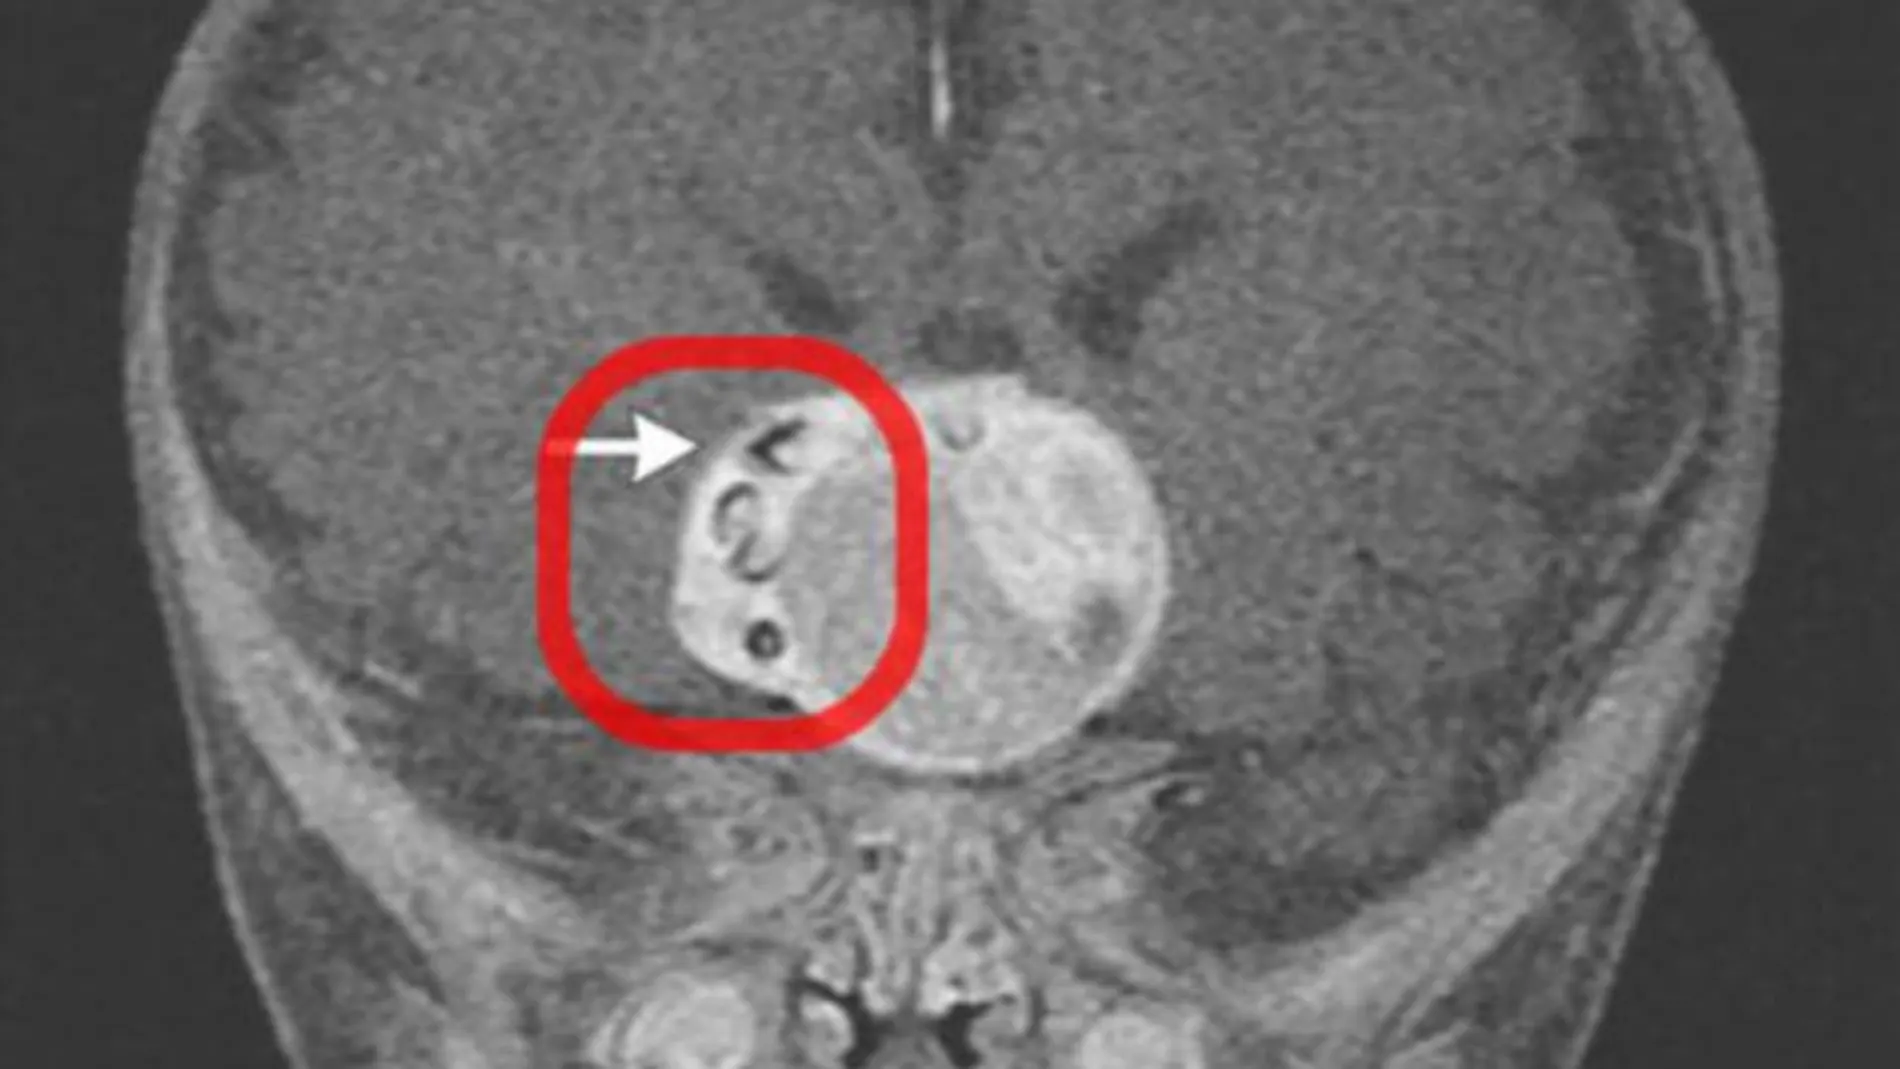 El recuadro rojo muestra las dos piezas dentales insertada en la masa cancerígena antes de ser extirpada